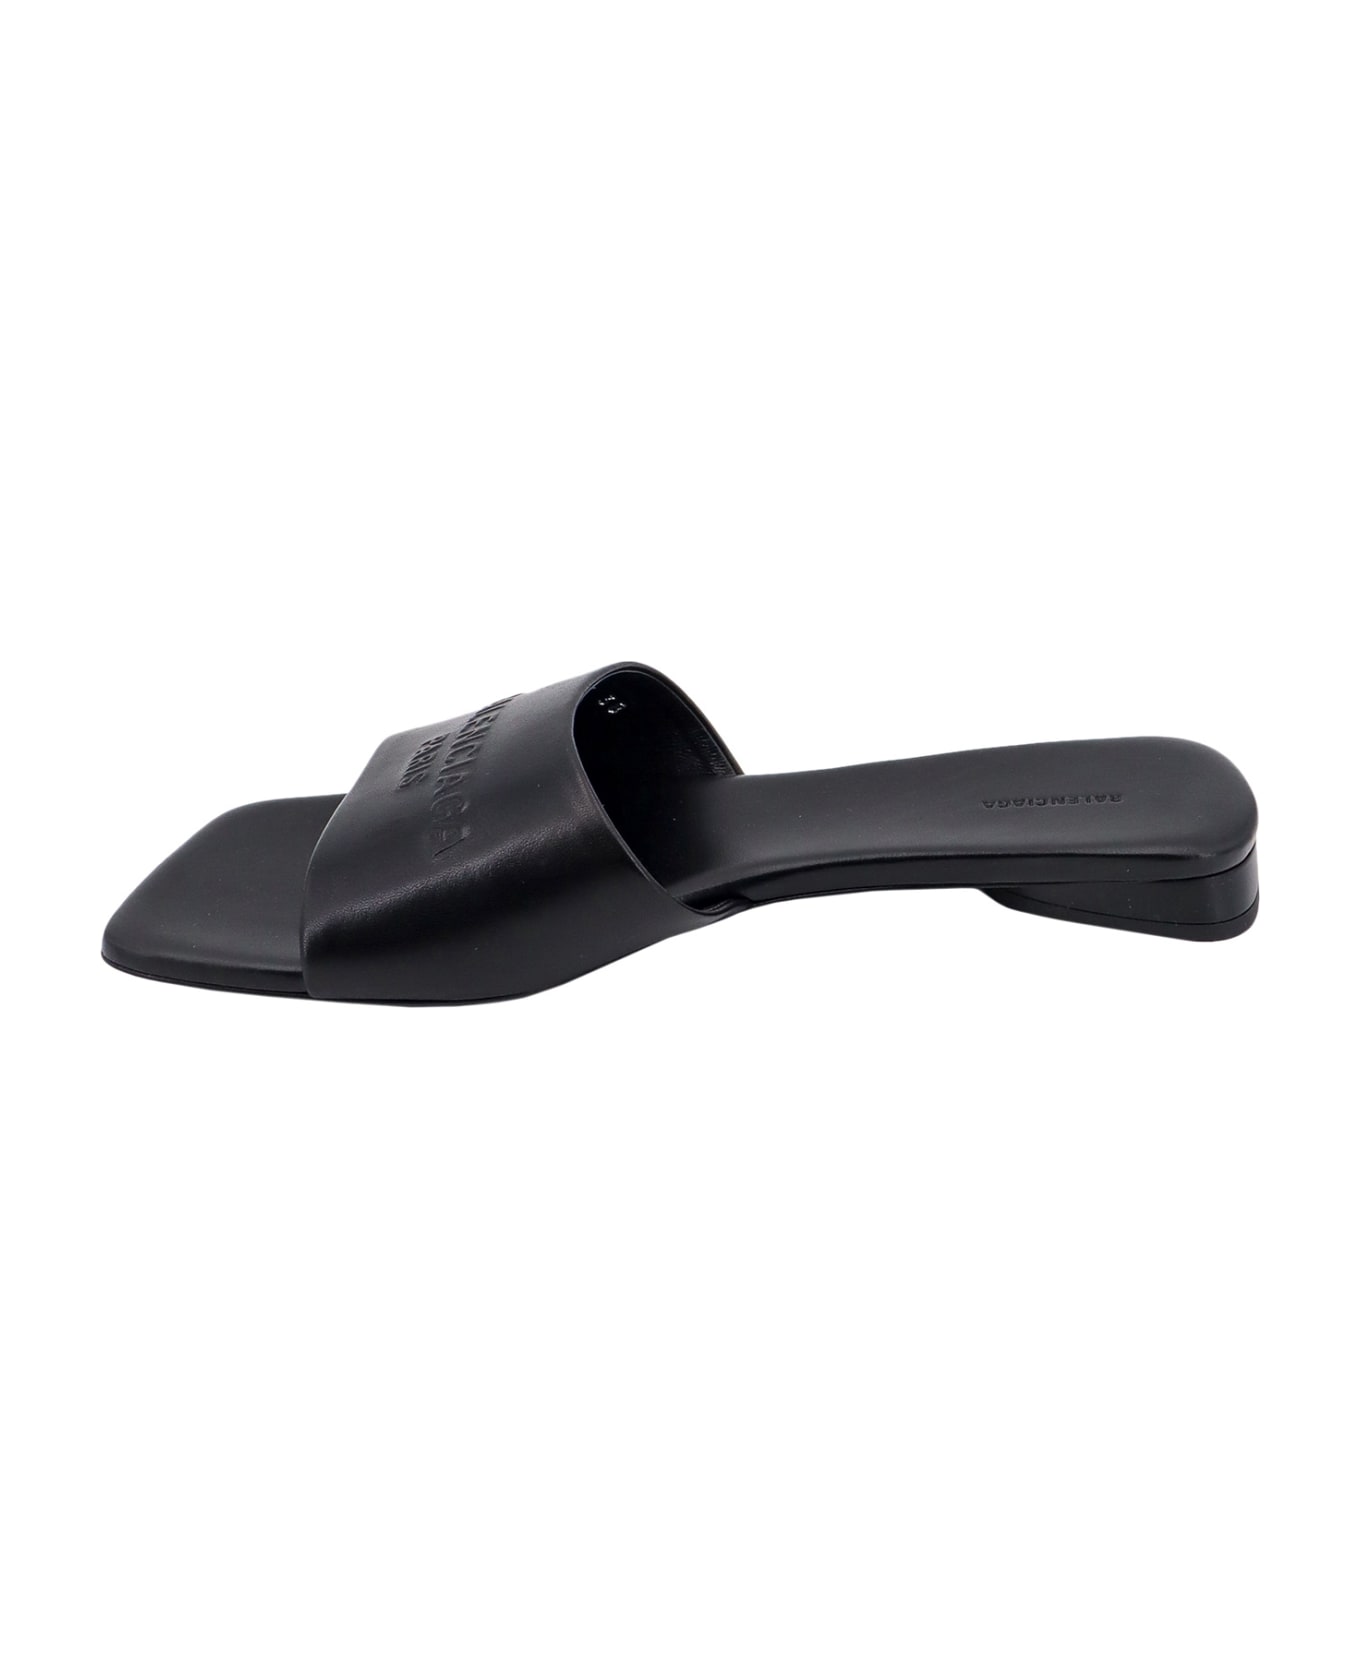 Balenciaga Duty Free Leather Sandals - Black サンダル